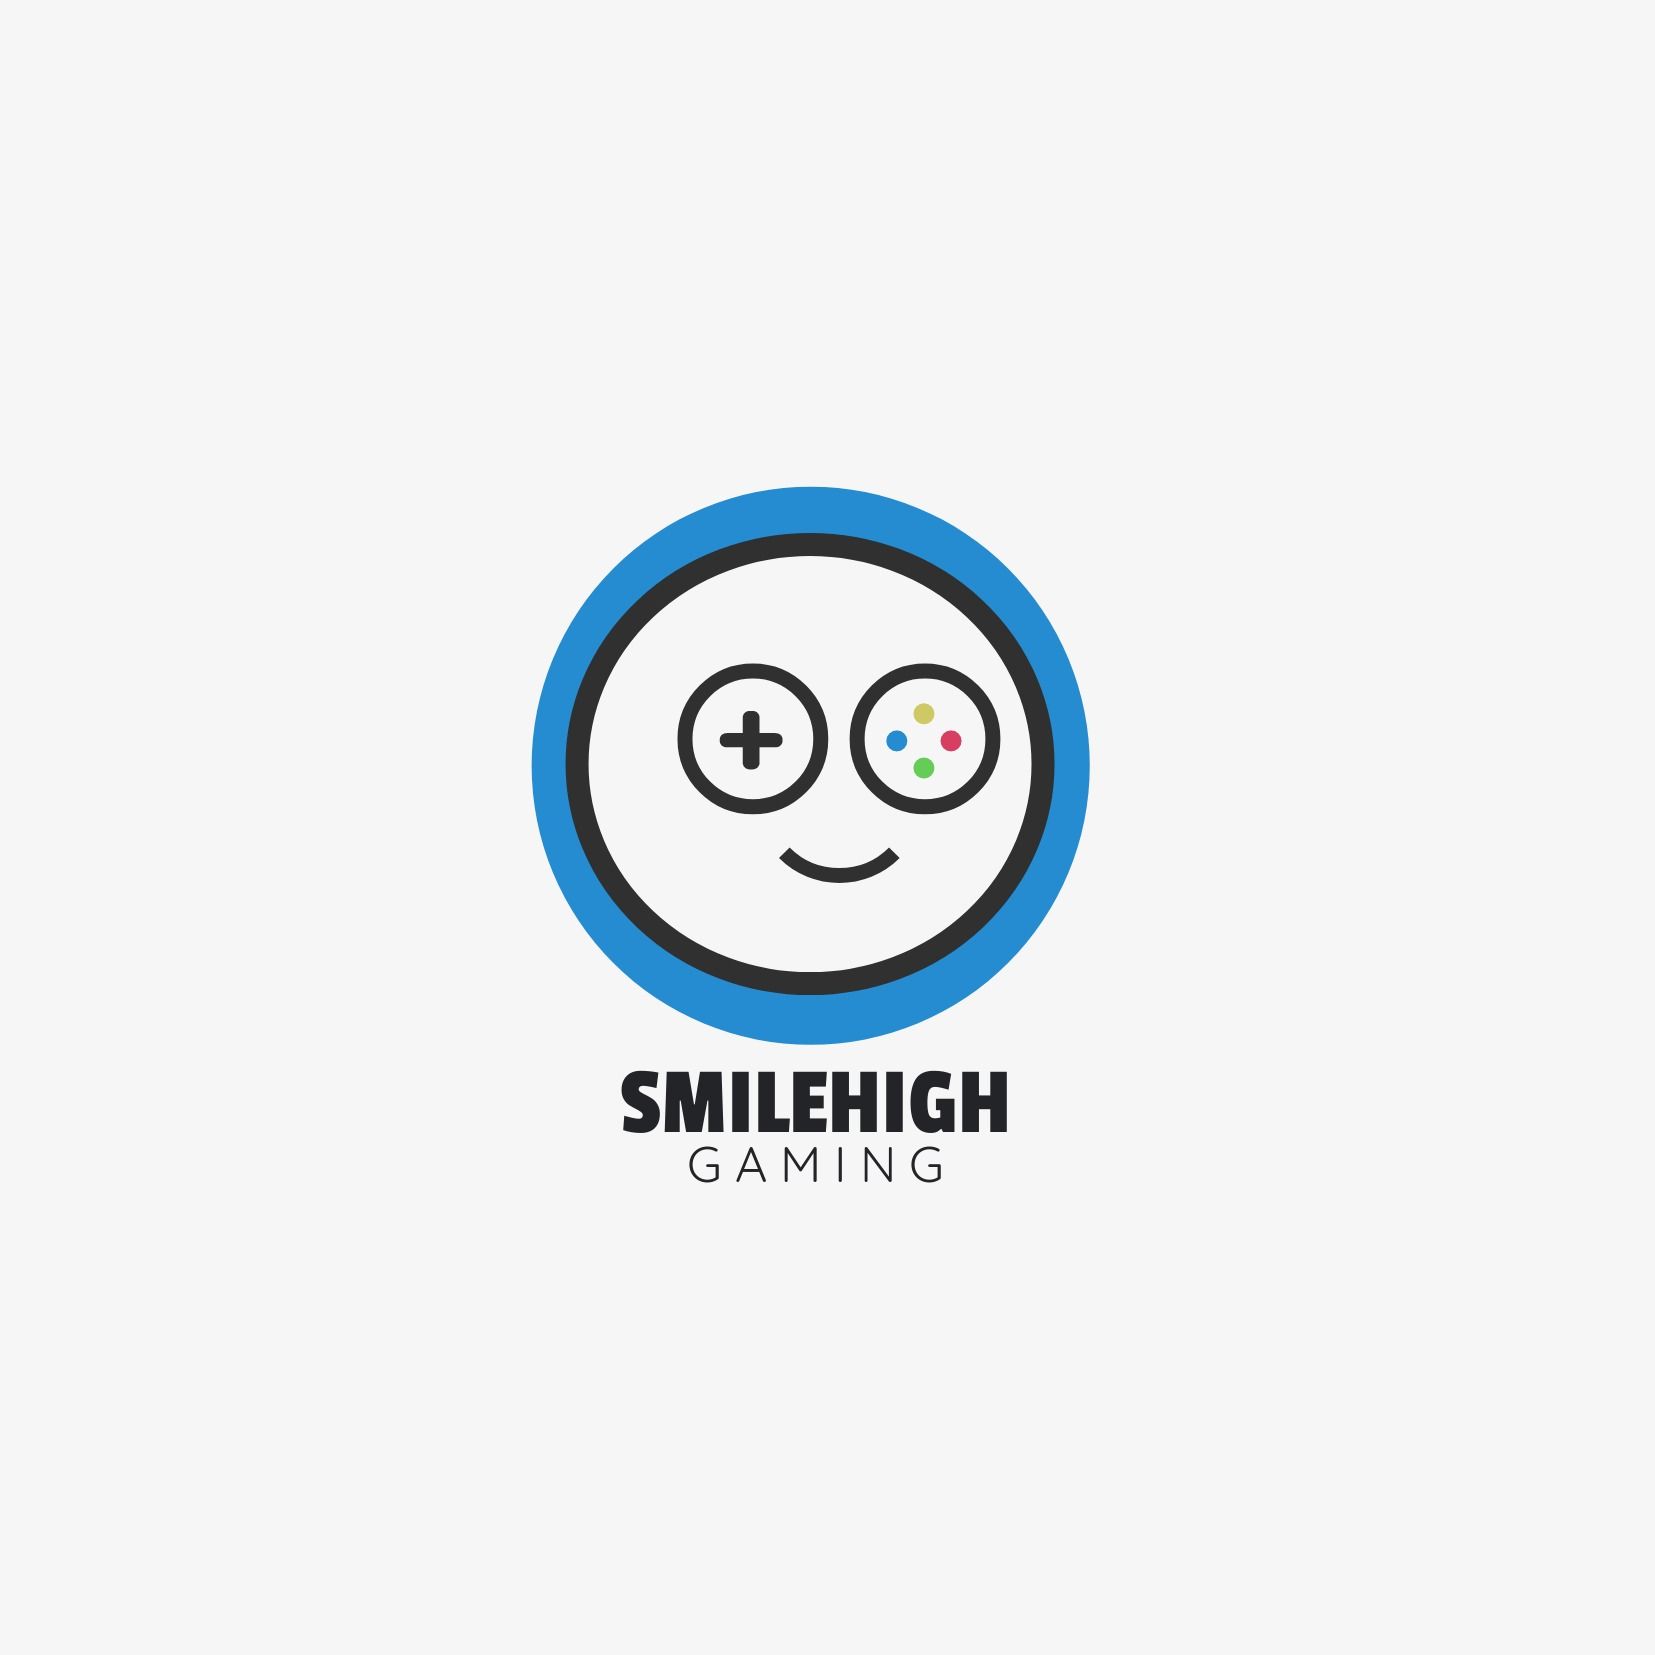 Abstraktes rundes Gamepad-Logo, das wie ein lächelndes Gesicht aussieht und „Smilehigh Gaming“ als Titel – Vergleich der Schriftarten Passion 1 und Quick Sand – Bild